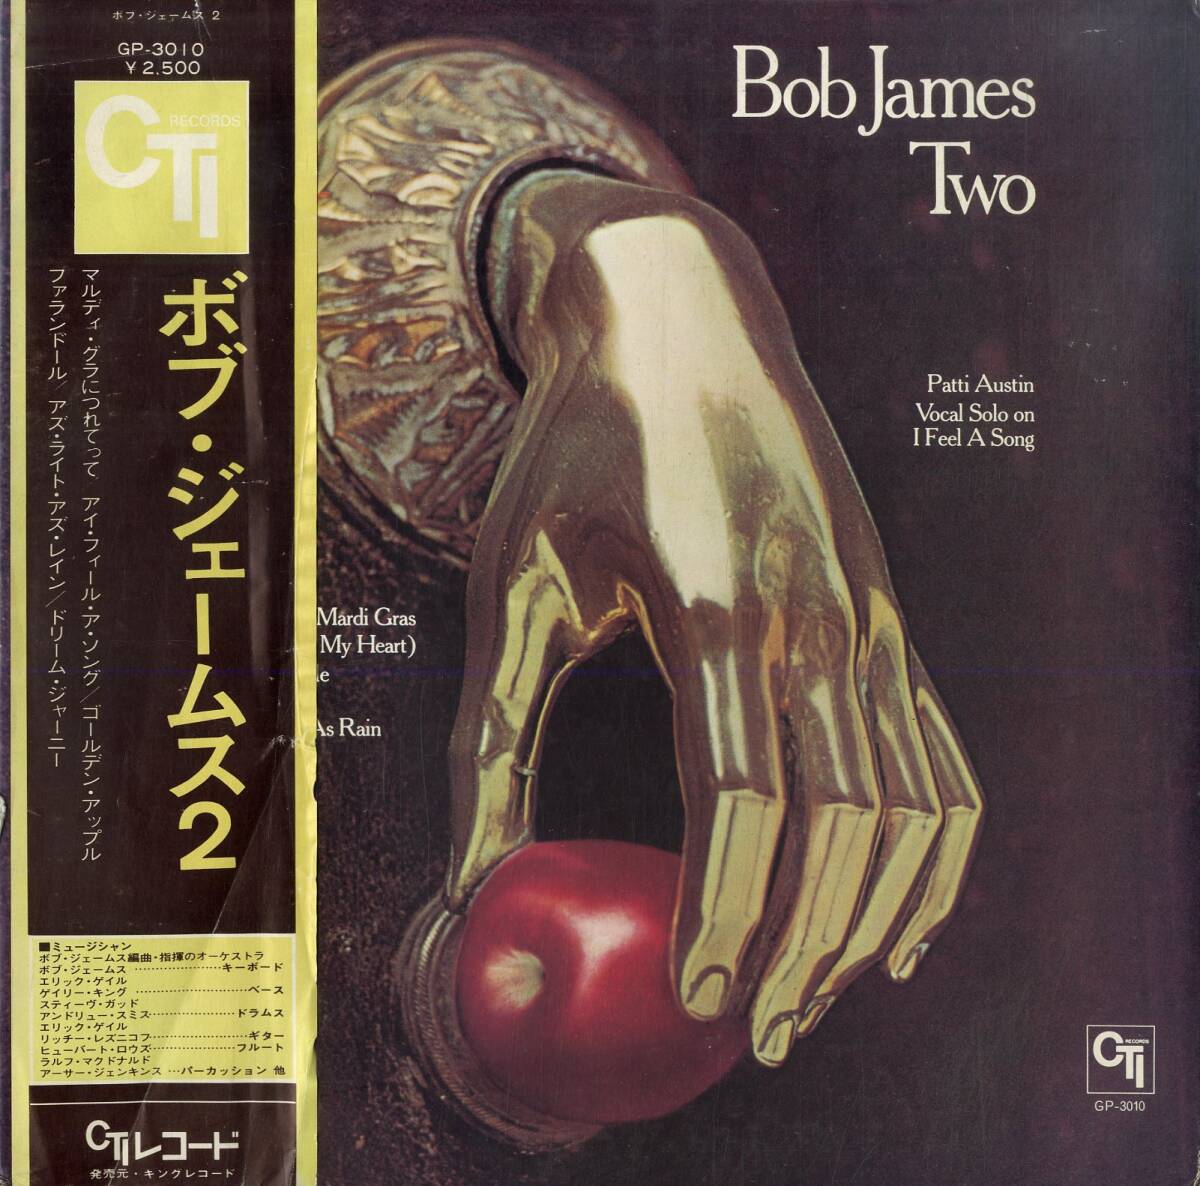 A00586278/LP/ボブ・ジェームス「Bob James Two (1975年・GP-3010・ジャズファンク・フュージョン)」_画像1